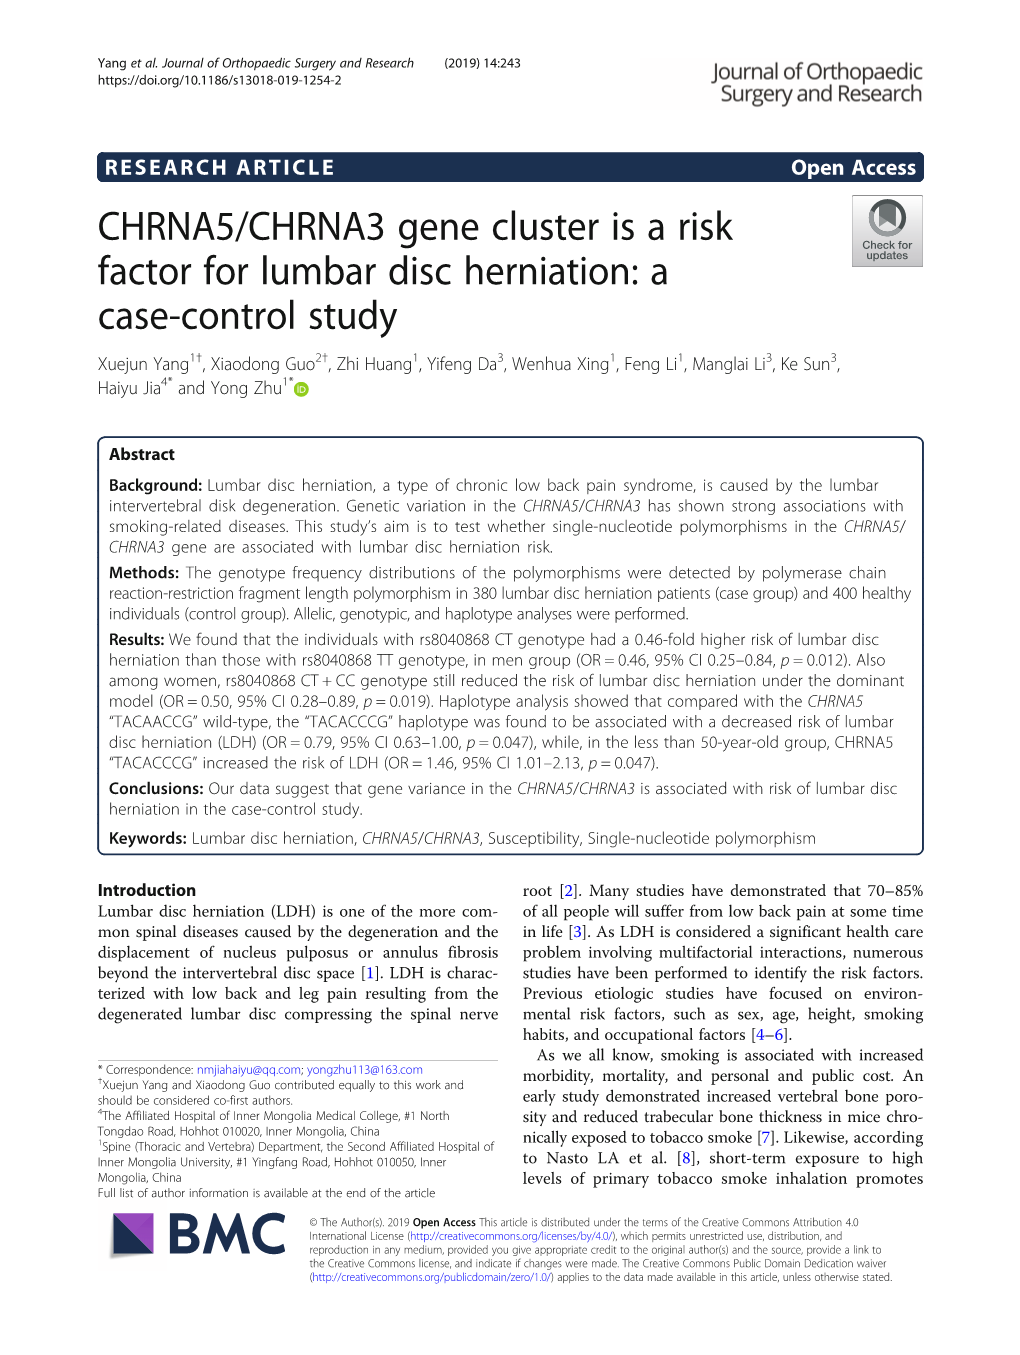 CHRNA5/CHRNA3 Gene Cluster Is a Risk Factor for Lumbar Disc Herniation